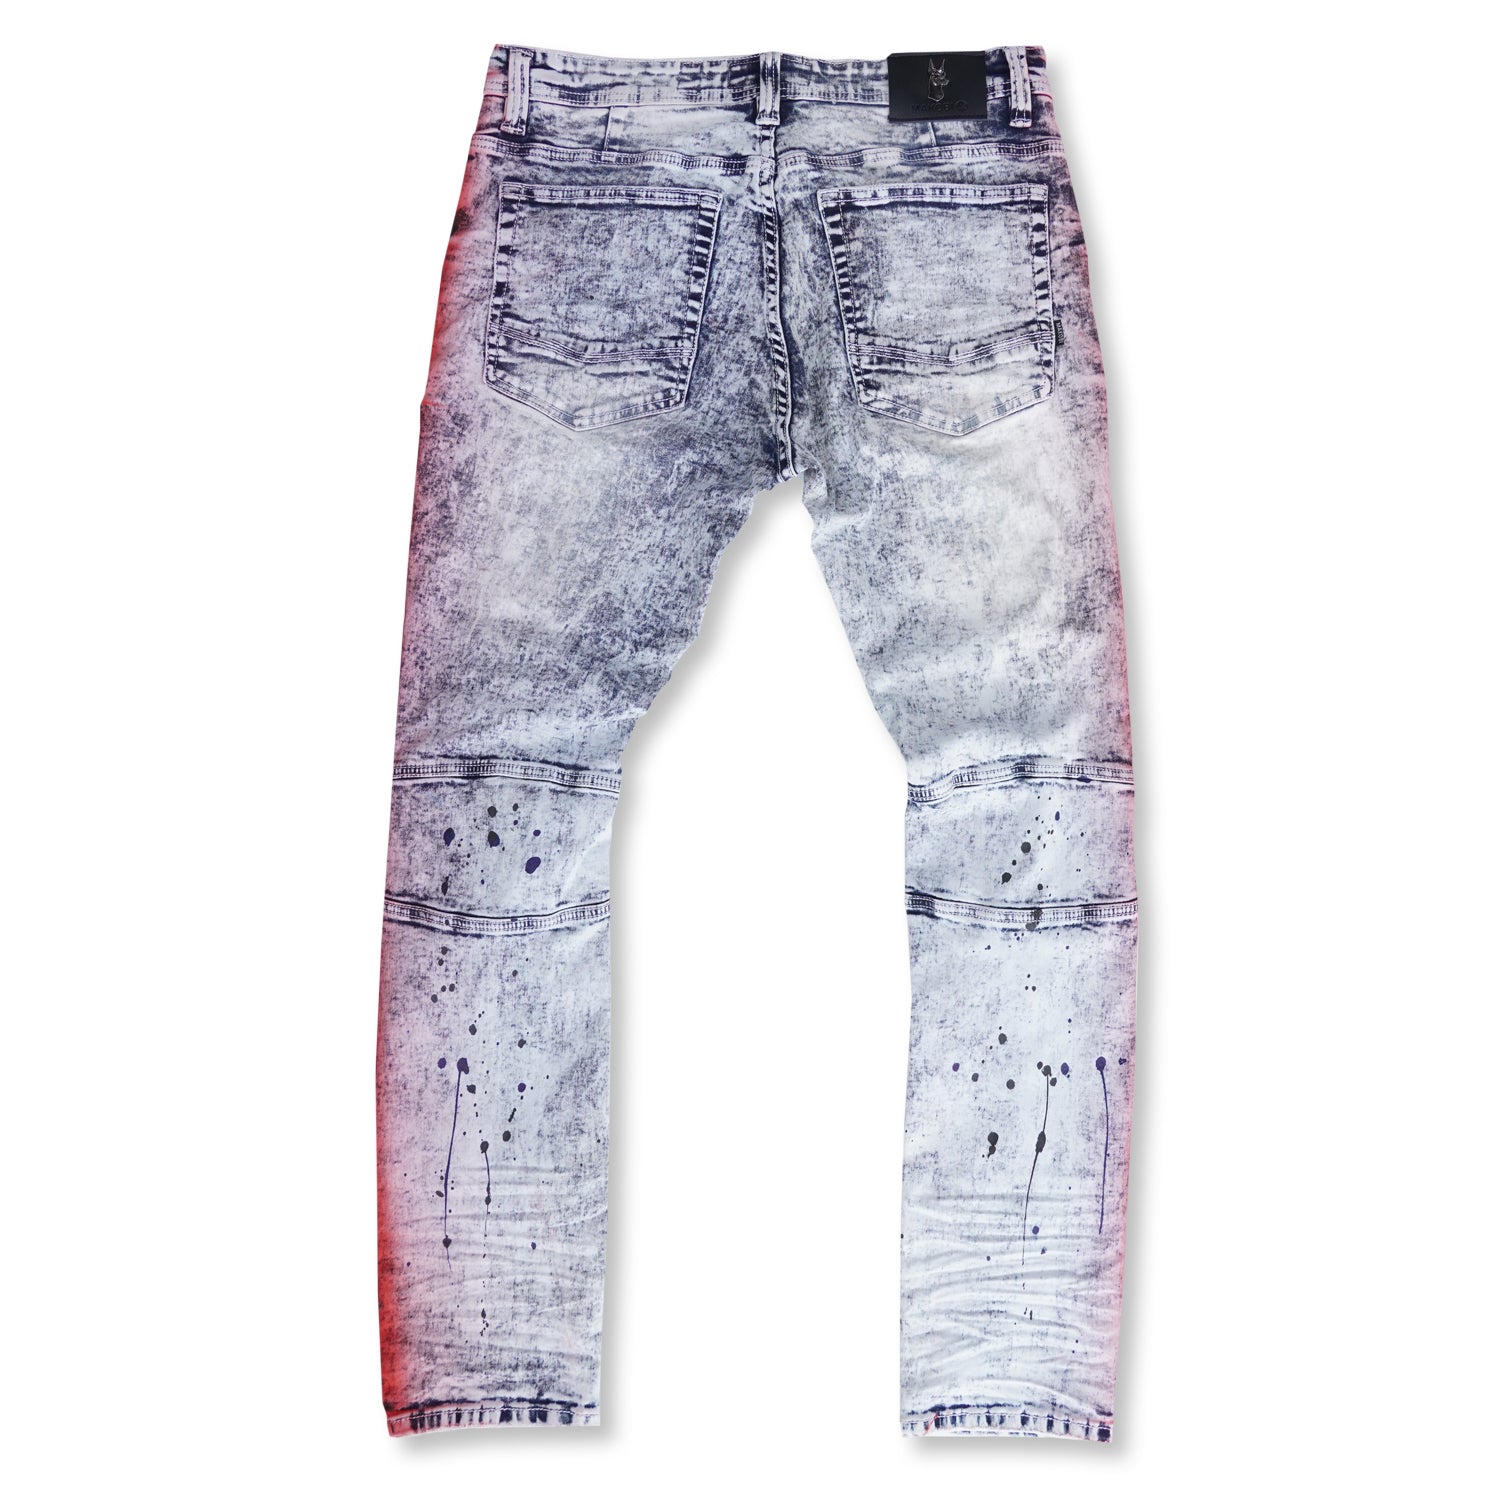 M1938 Paint Stroke Shredded Denim Jeans - Light Wash